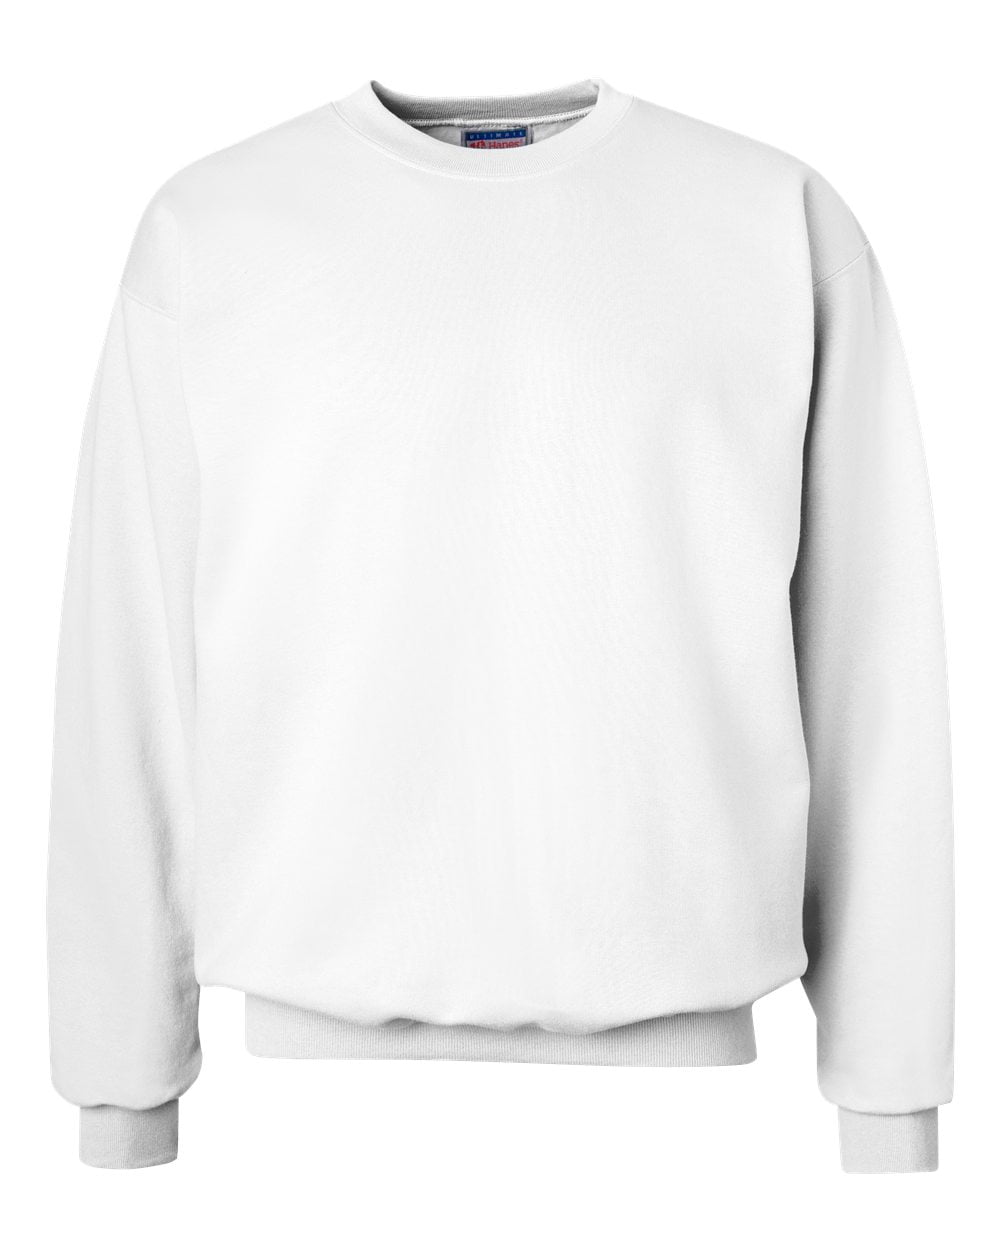 Fleece Ultimate Cotton Crewneck Sweatshirt